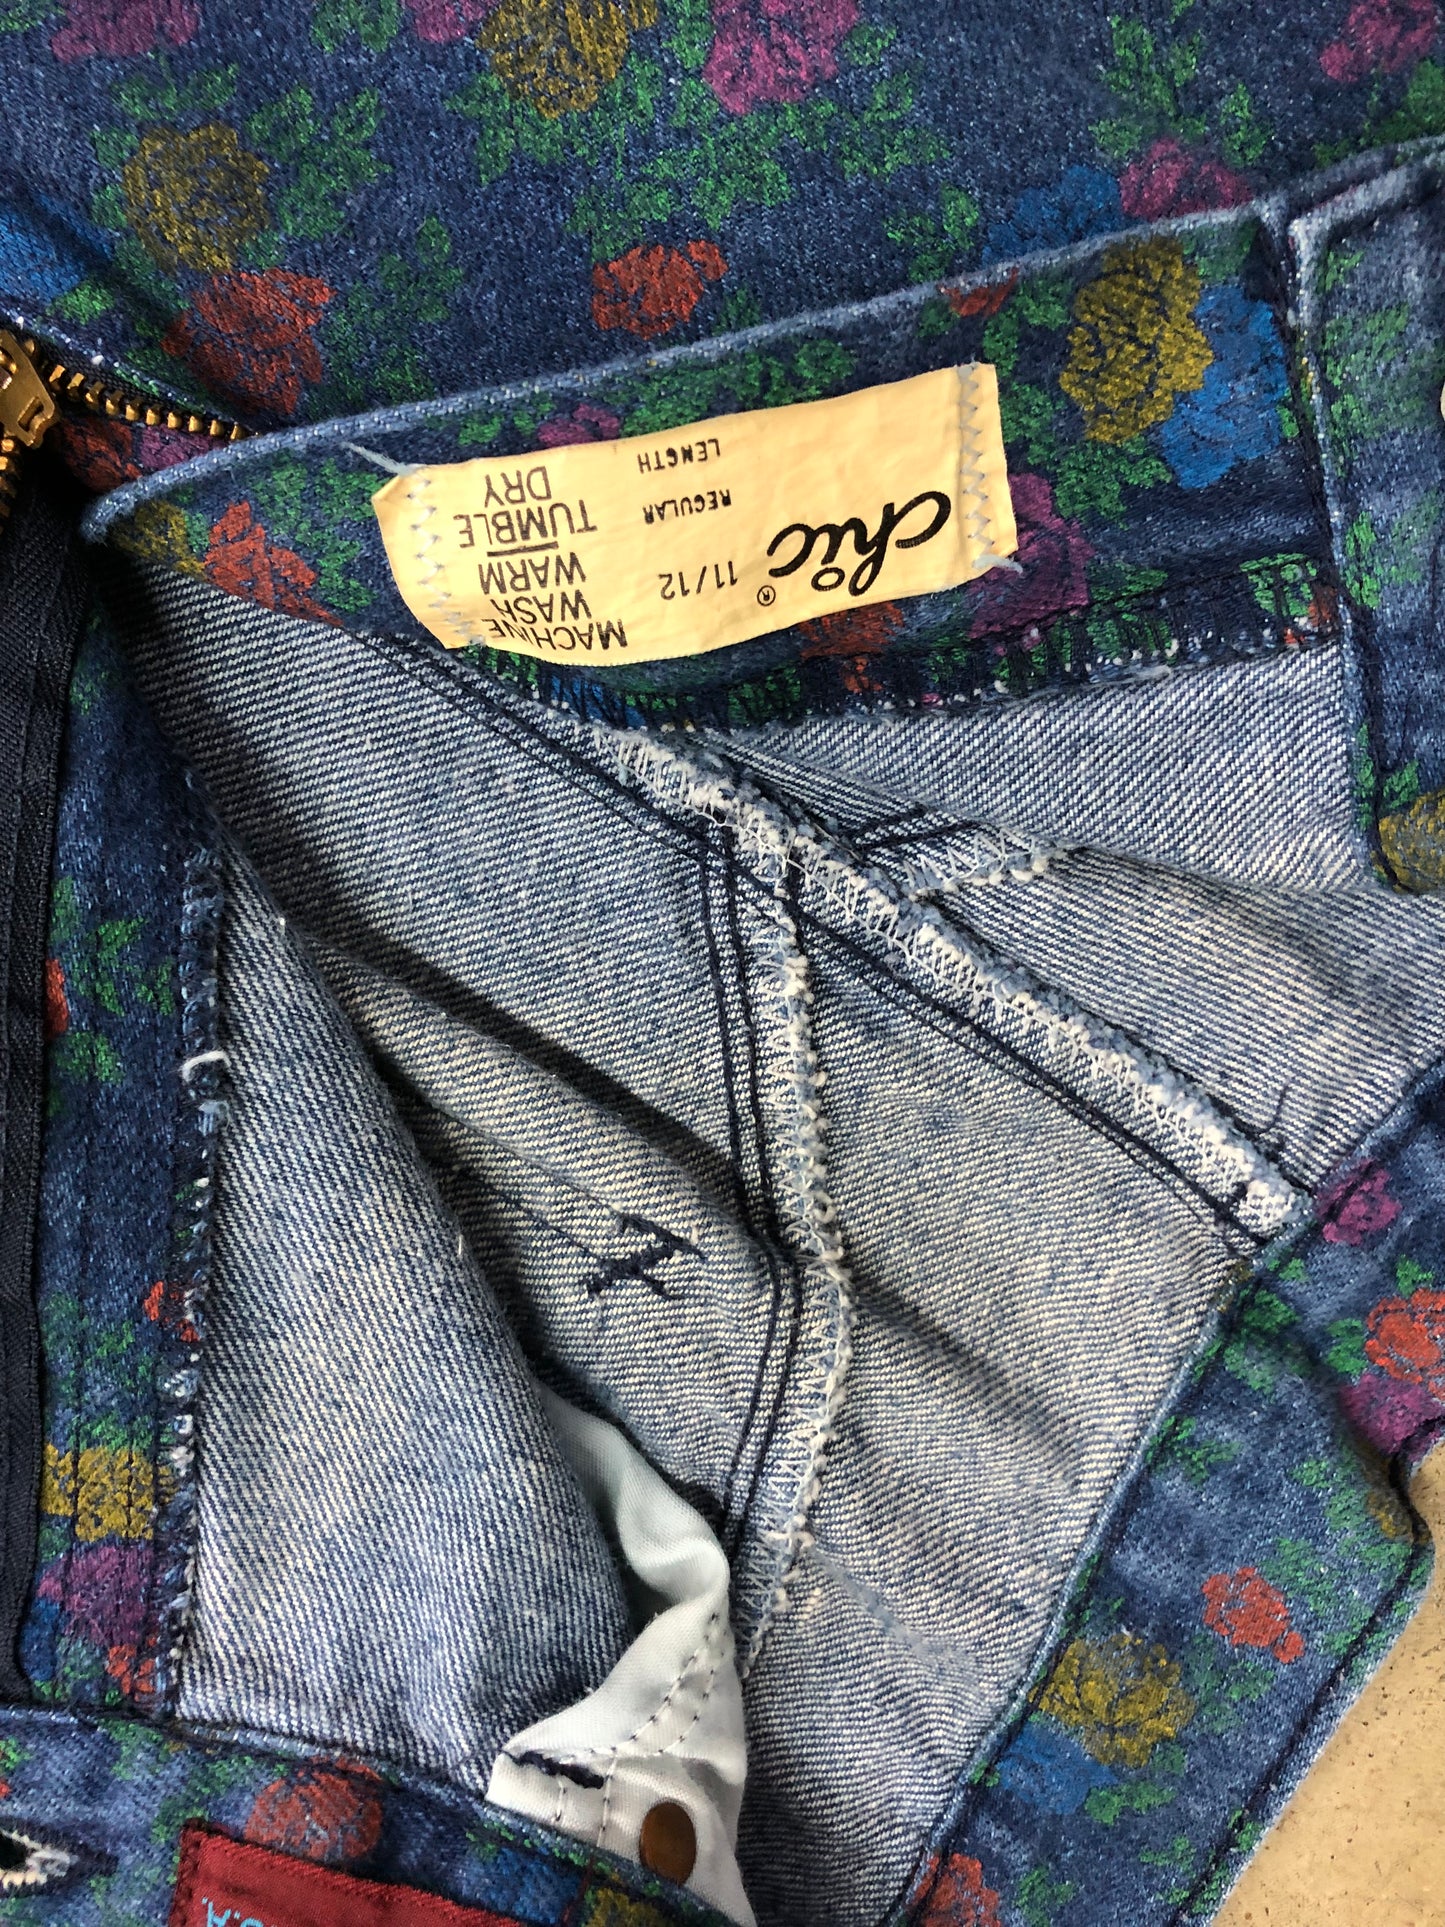 VTG Wmn's Chic Floral Denim Jeans Sz 11/12